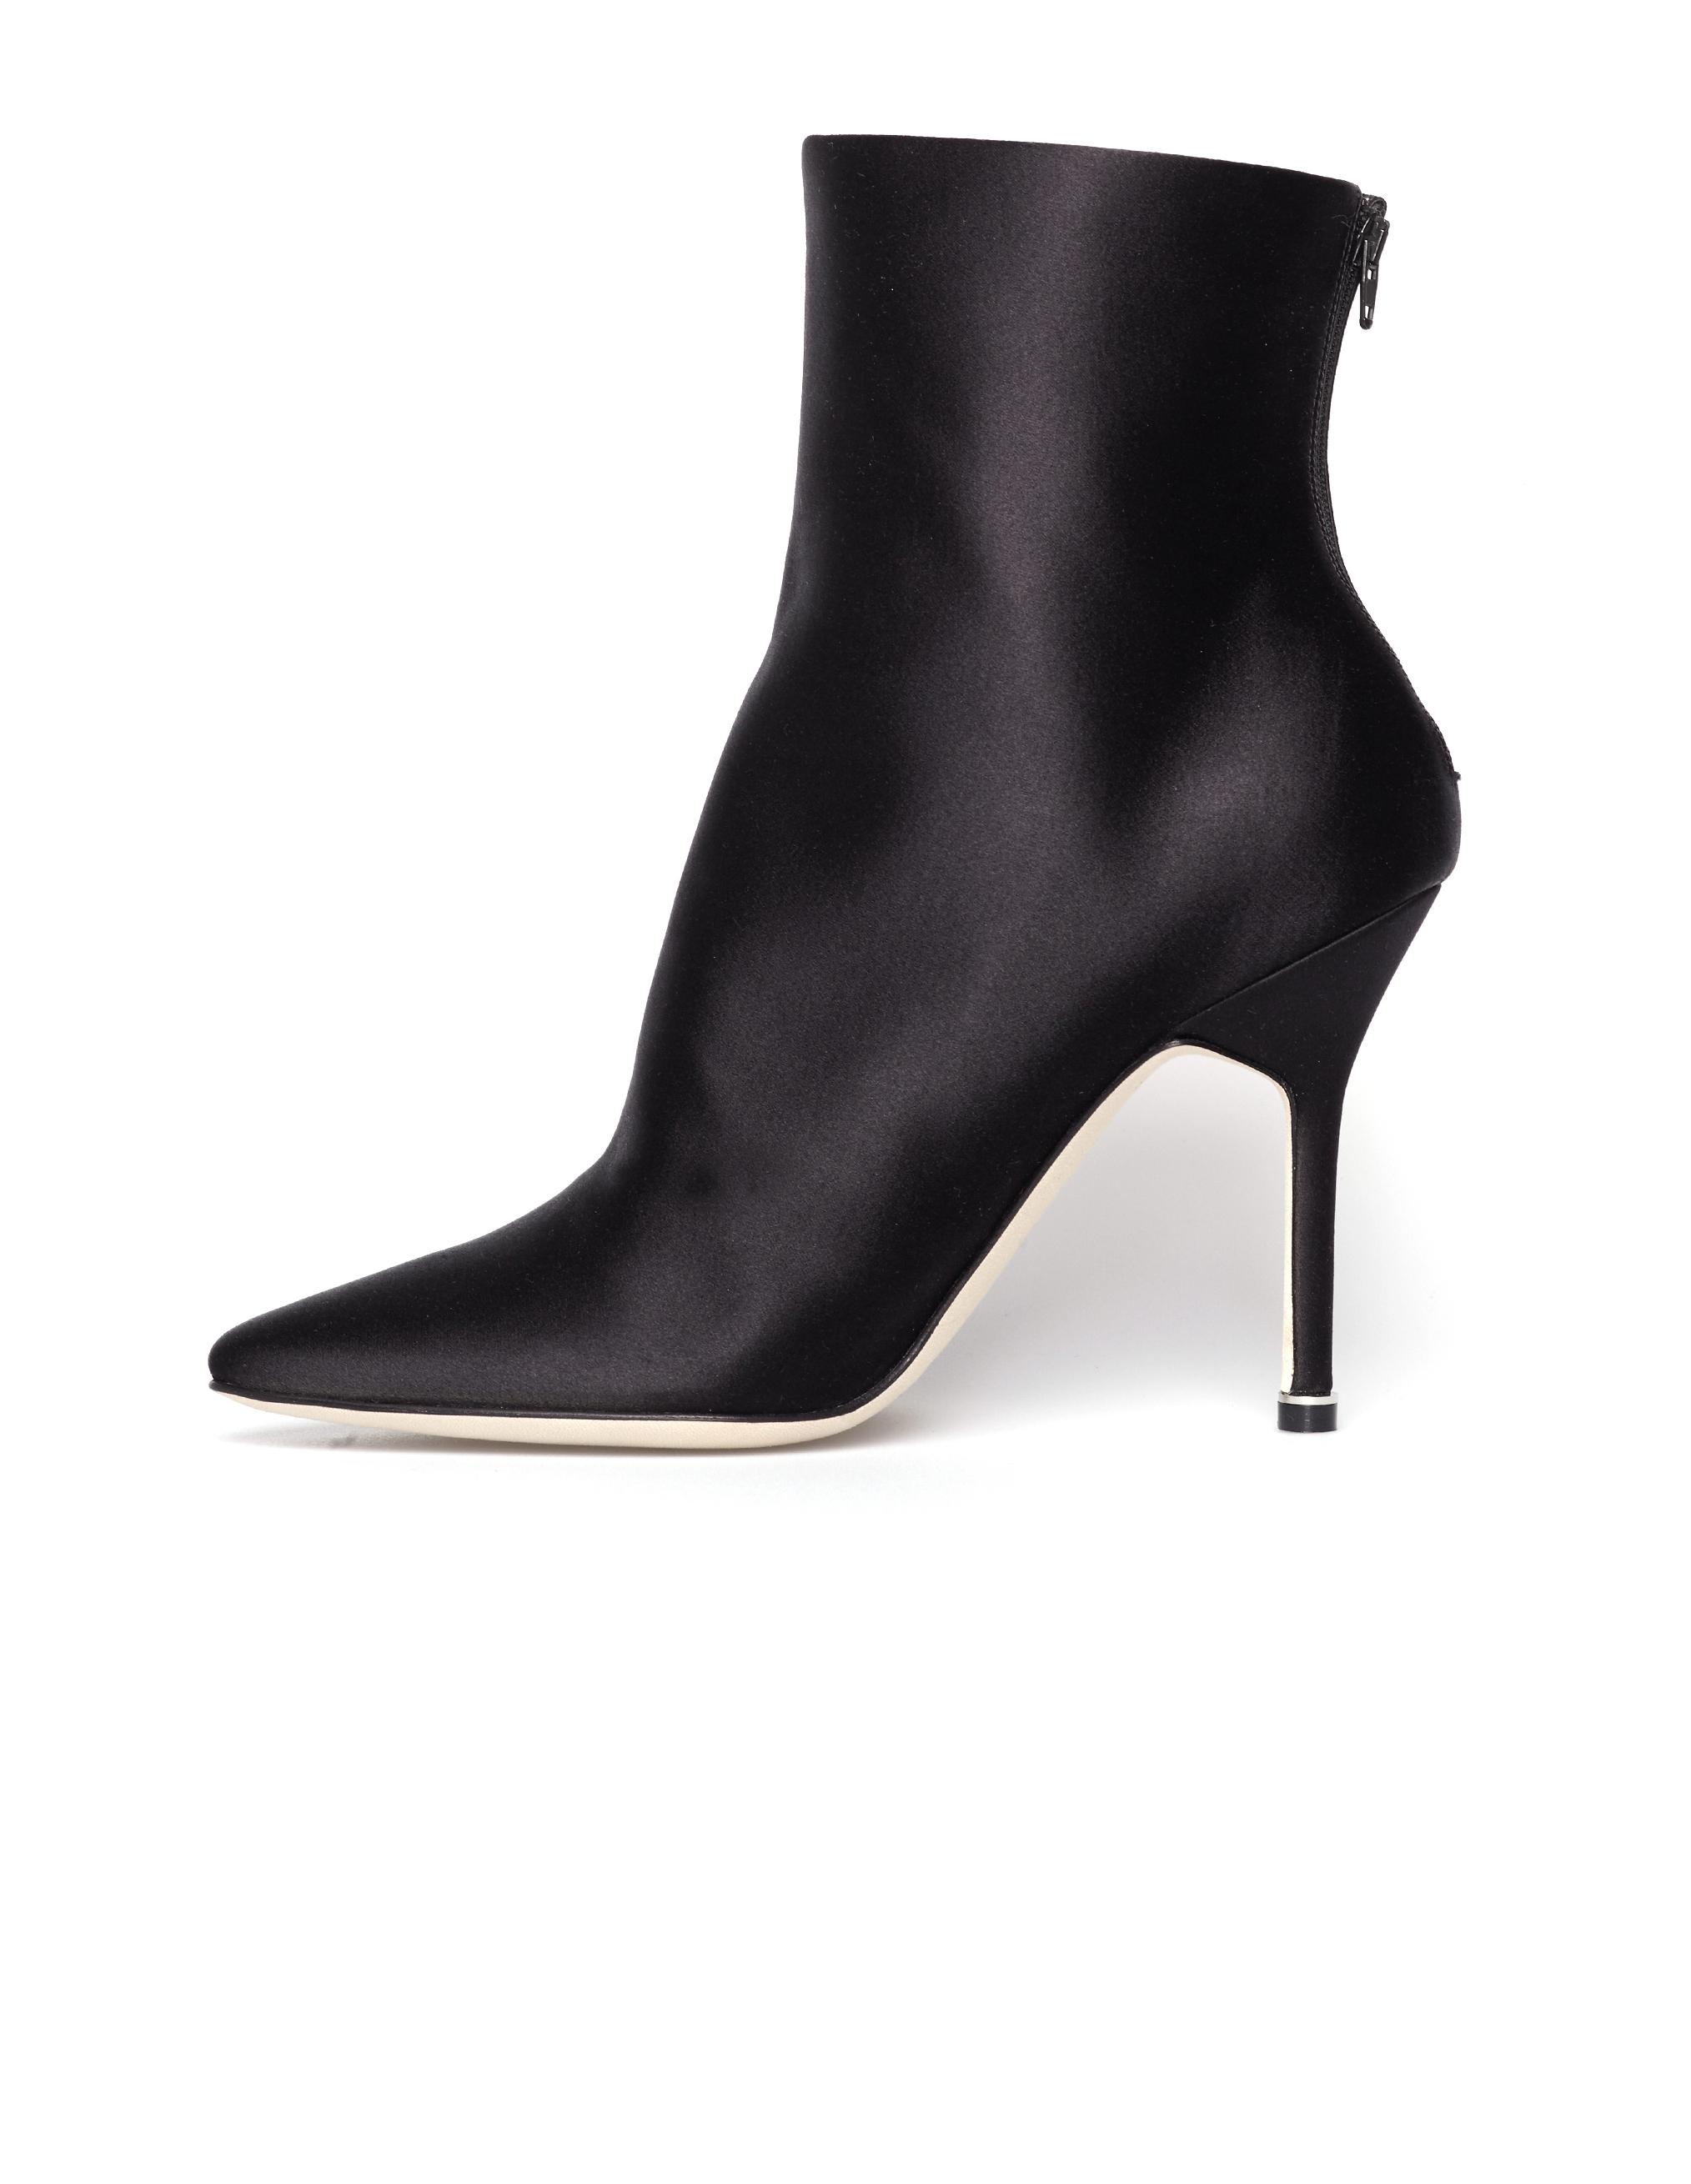 Vetements Silk X Manolo Blahnik Ankle Boots in Black - Lyst